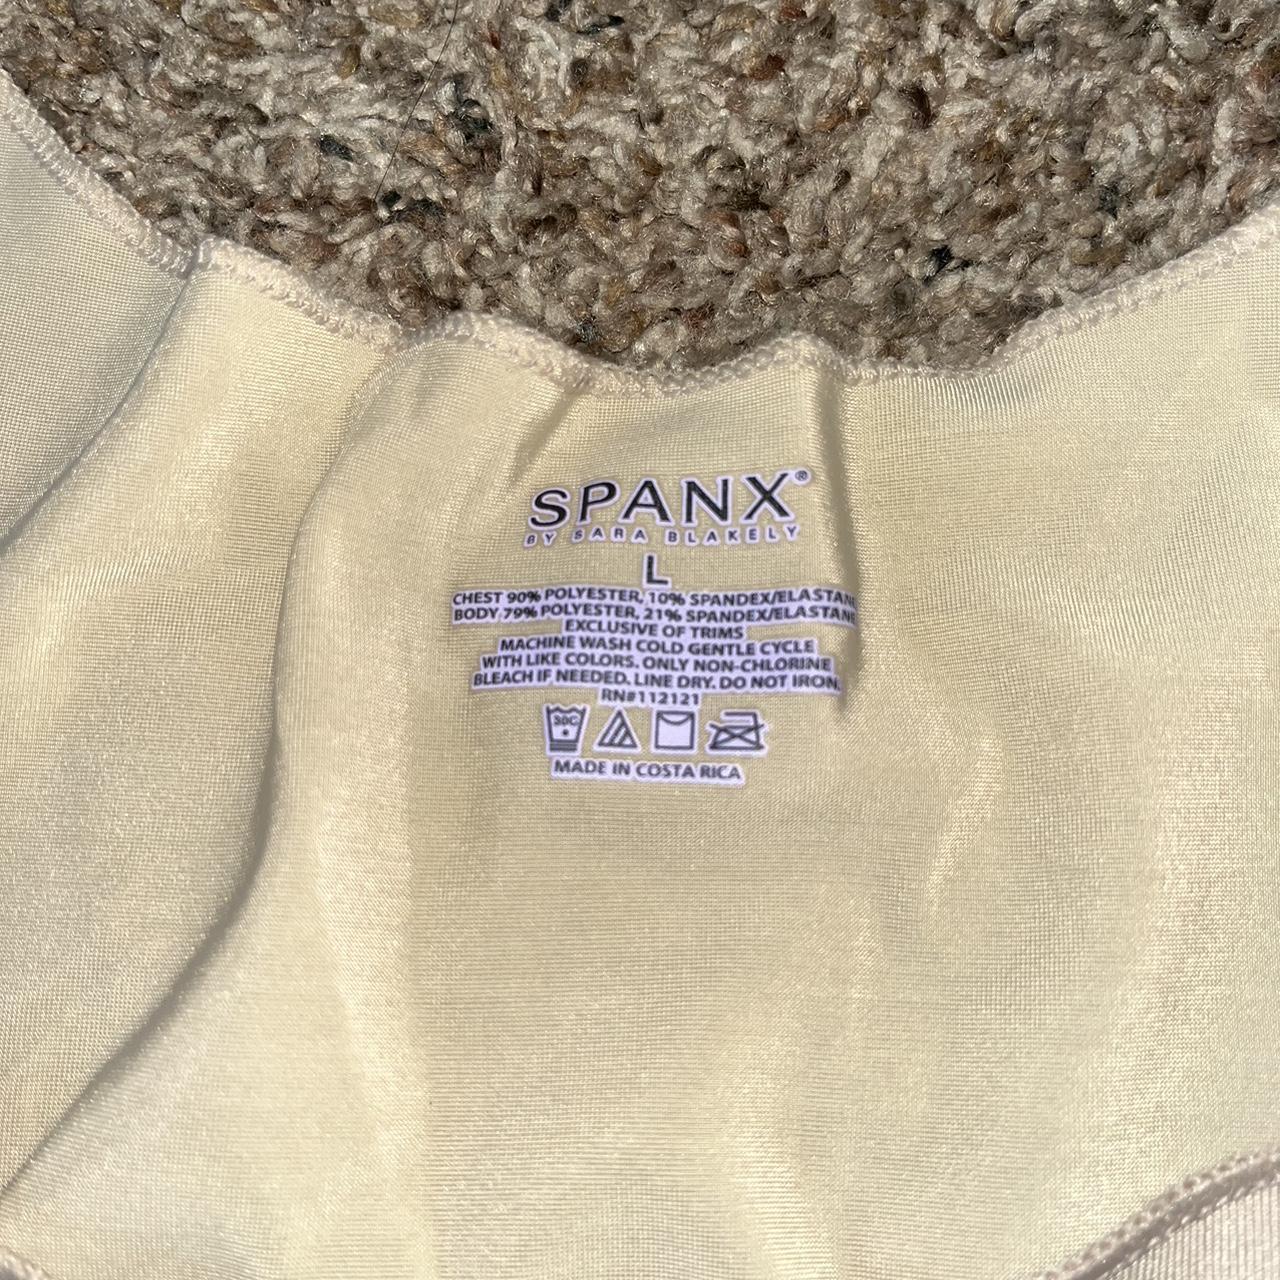 Nude Spanx Shapewear - Depop